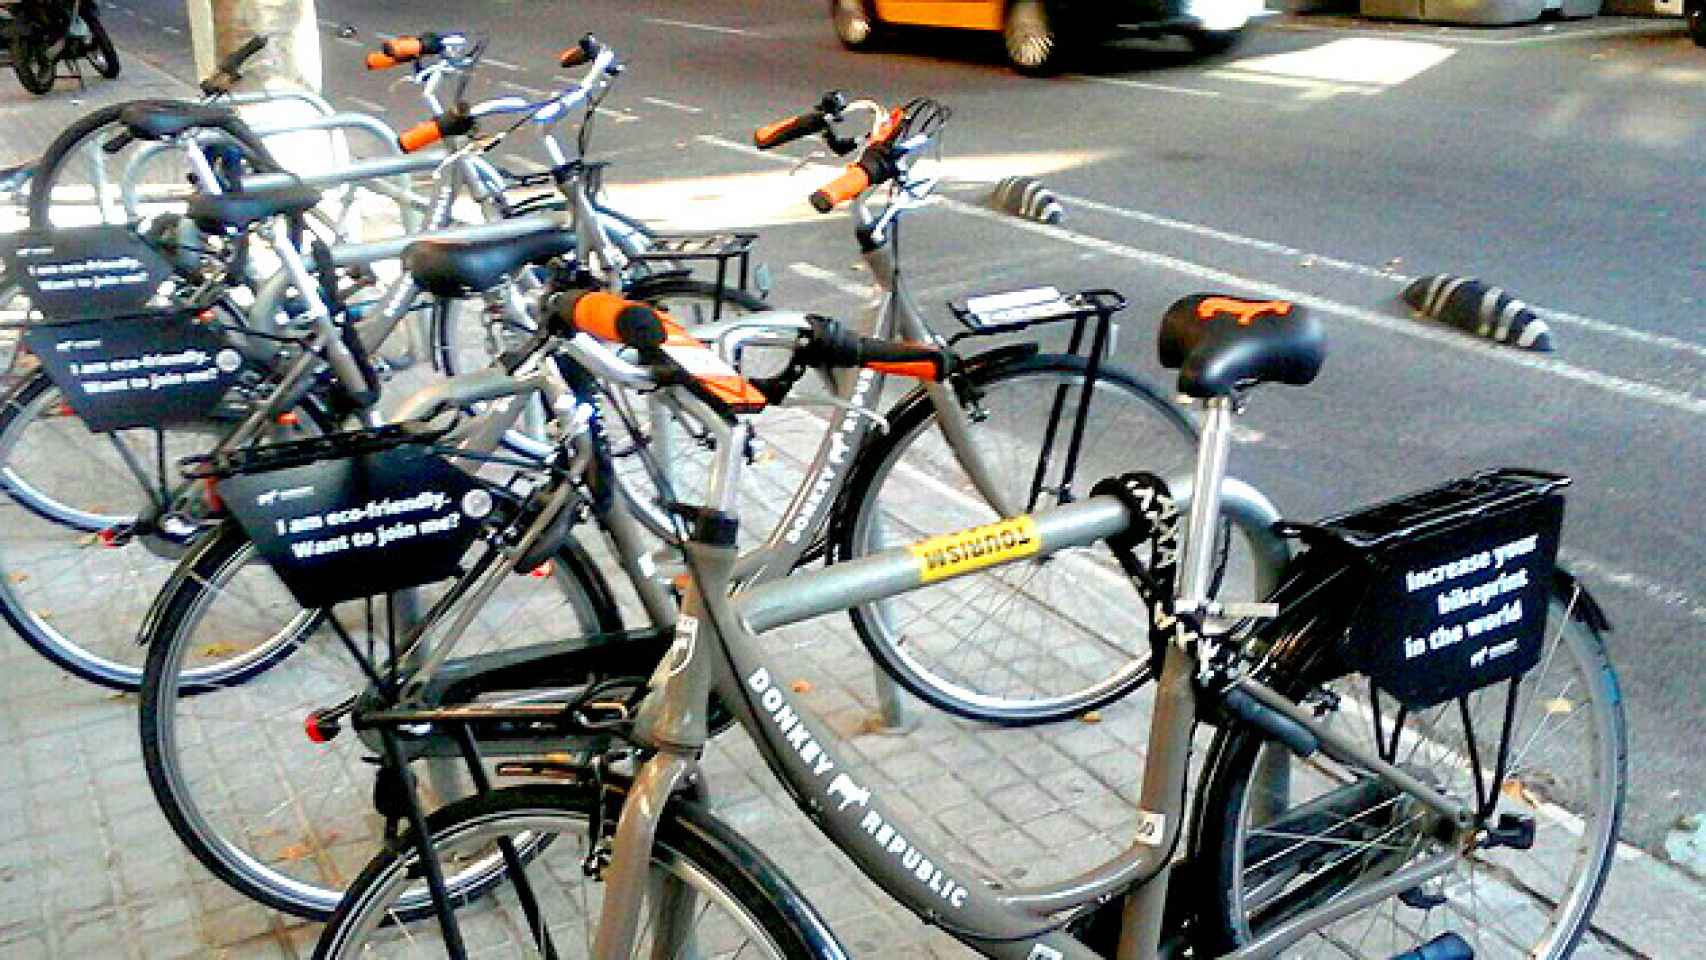 Las bicicletas de Donkey Republic ocupan los aparca-bicis municipales de las aceras de Barcelona / CG